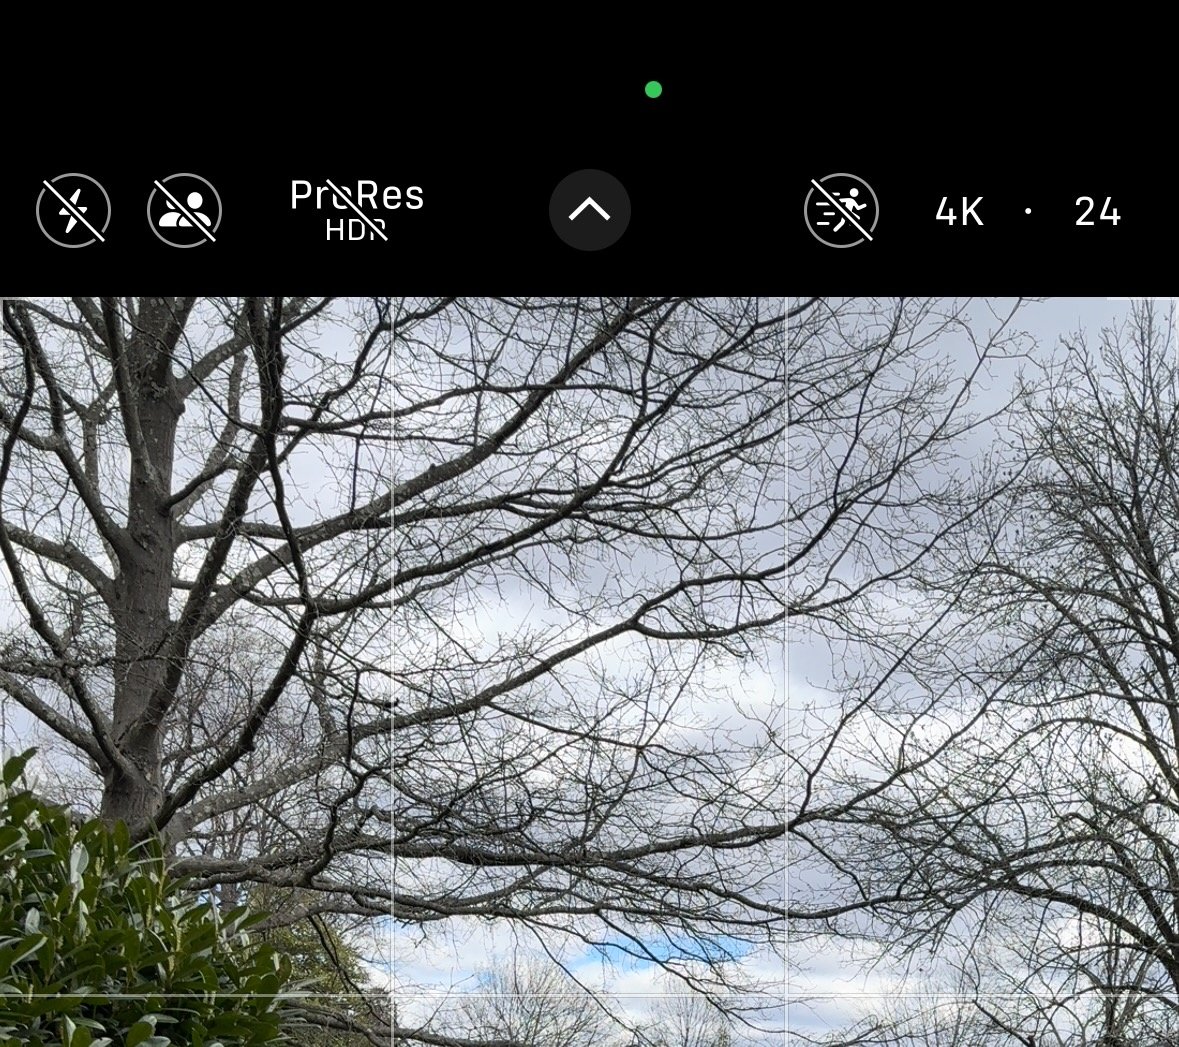 Голые ветки деревьев на фоне облачного неба с наложением интерфейса камеры iPhone, показывающим настройки записи.